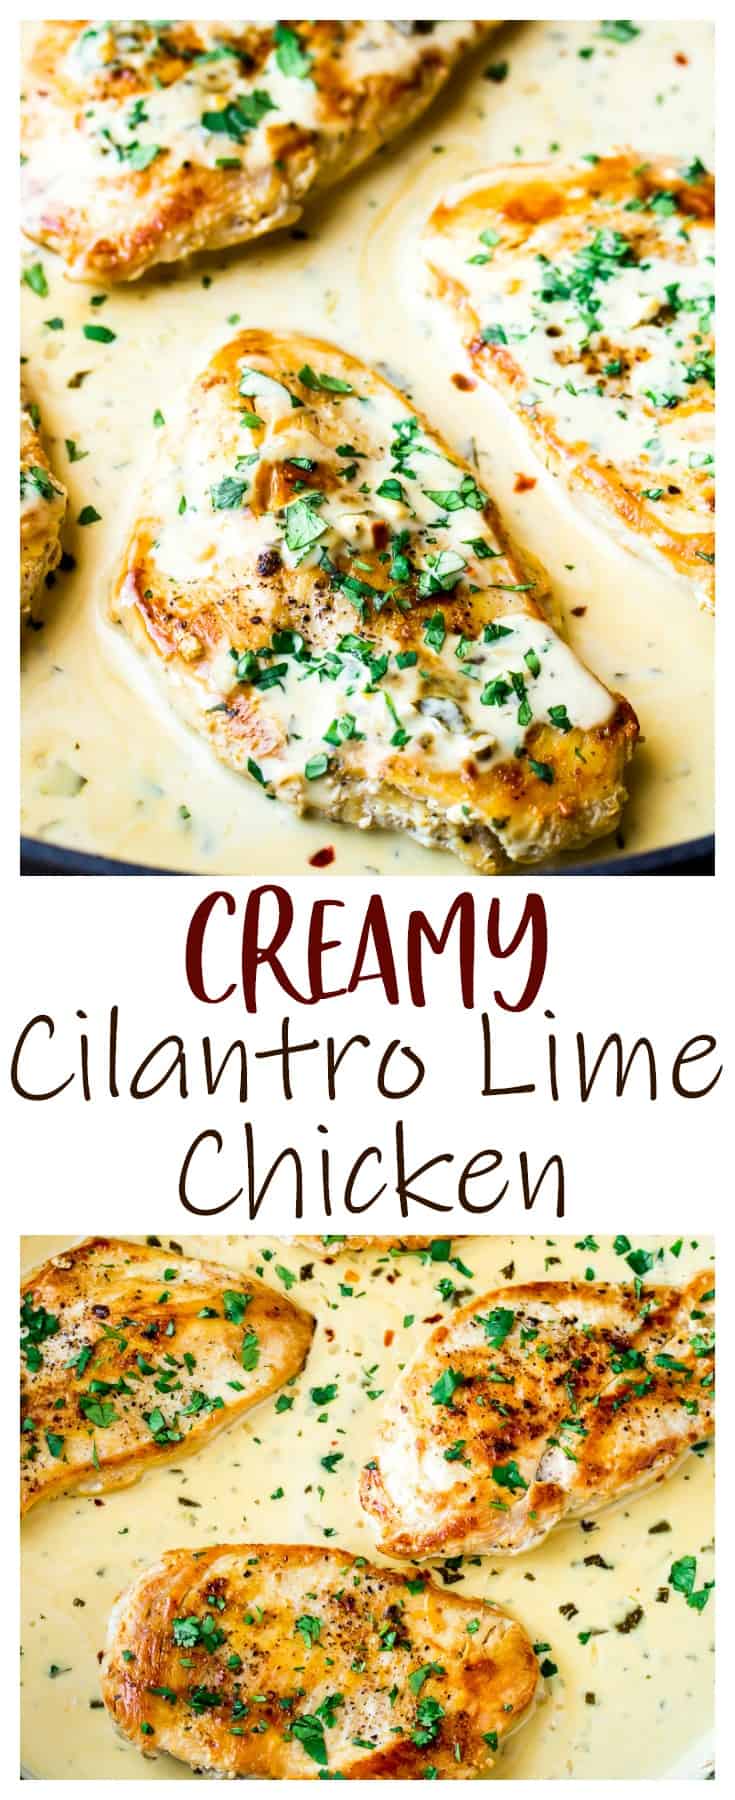 Creamy Cilantro Lime Chicken - Delicious Little Bites